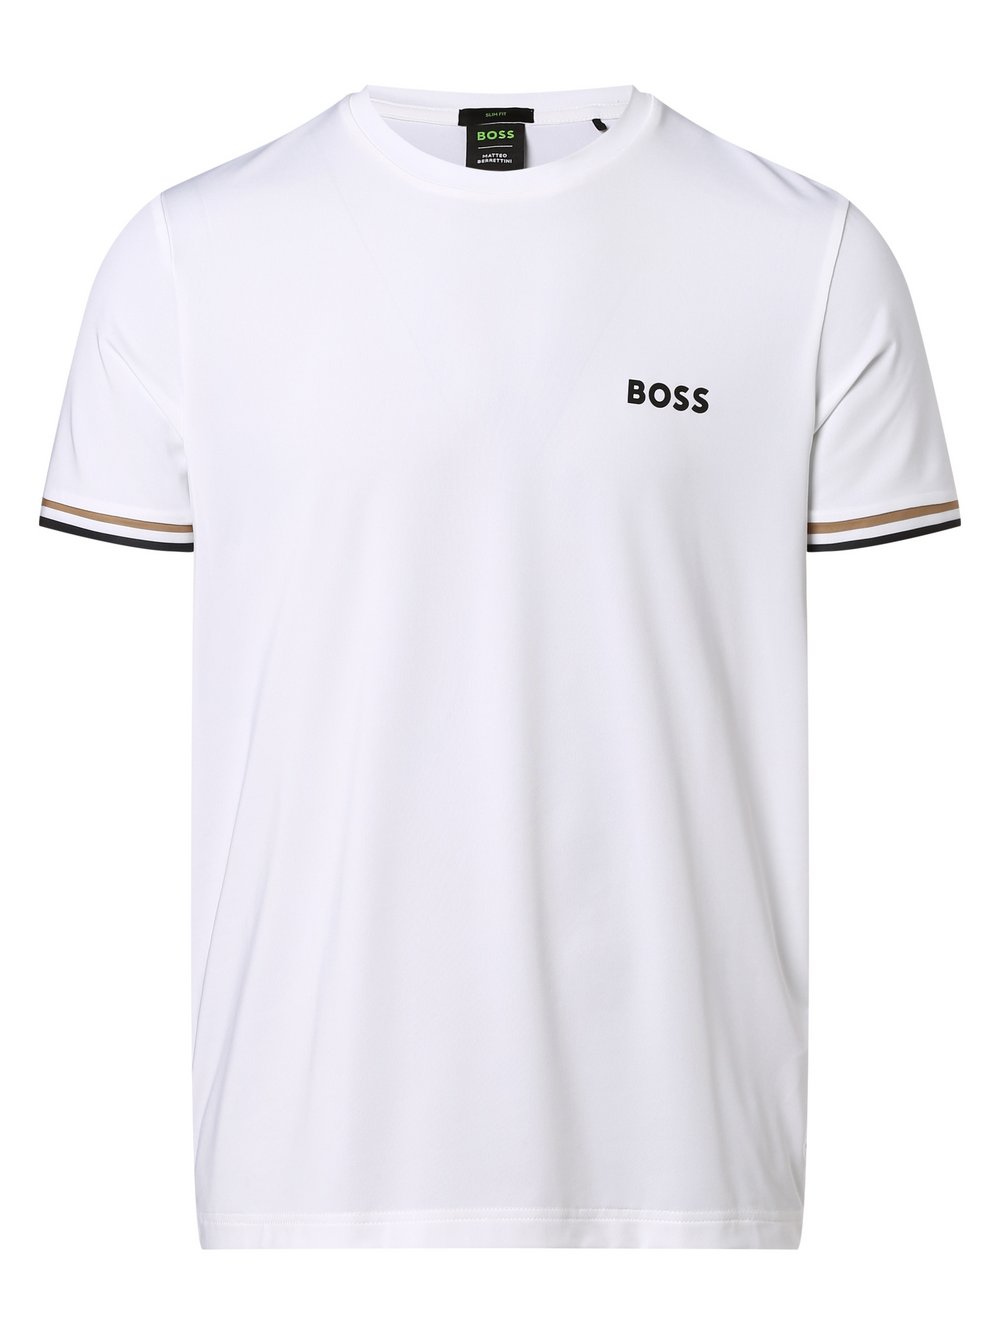 BOSS Green - T-shirt męski – Tee MB 2, biały